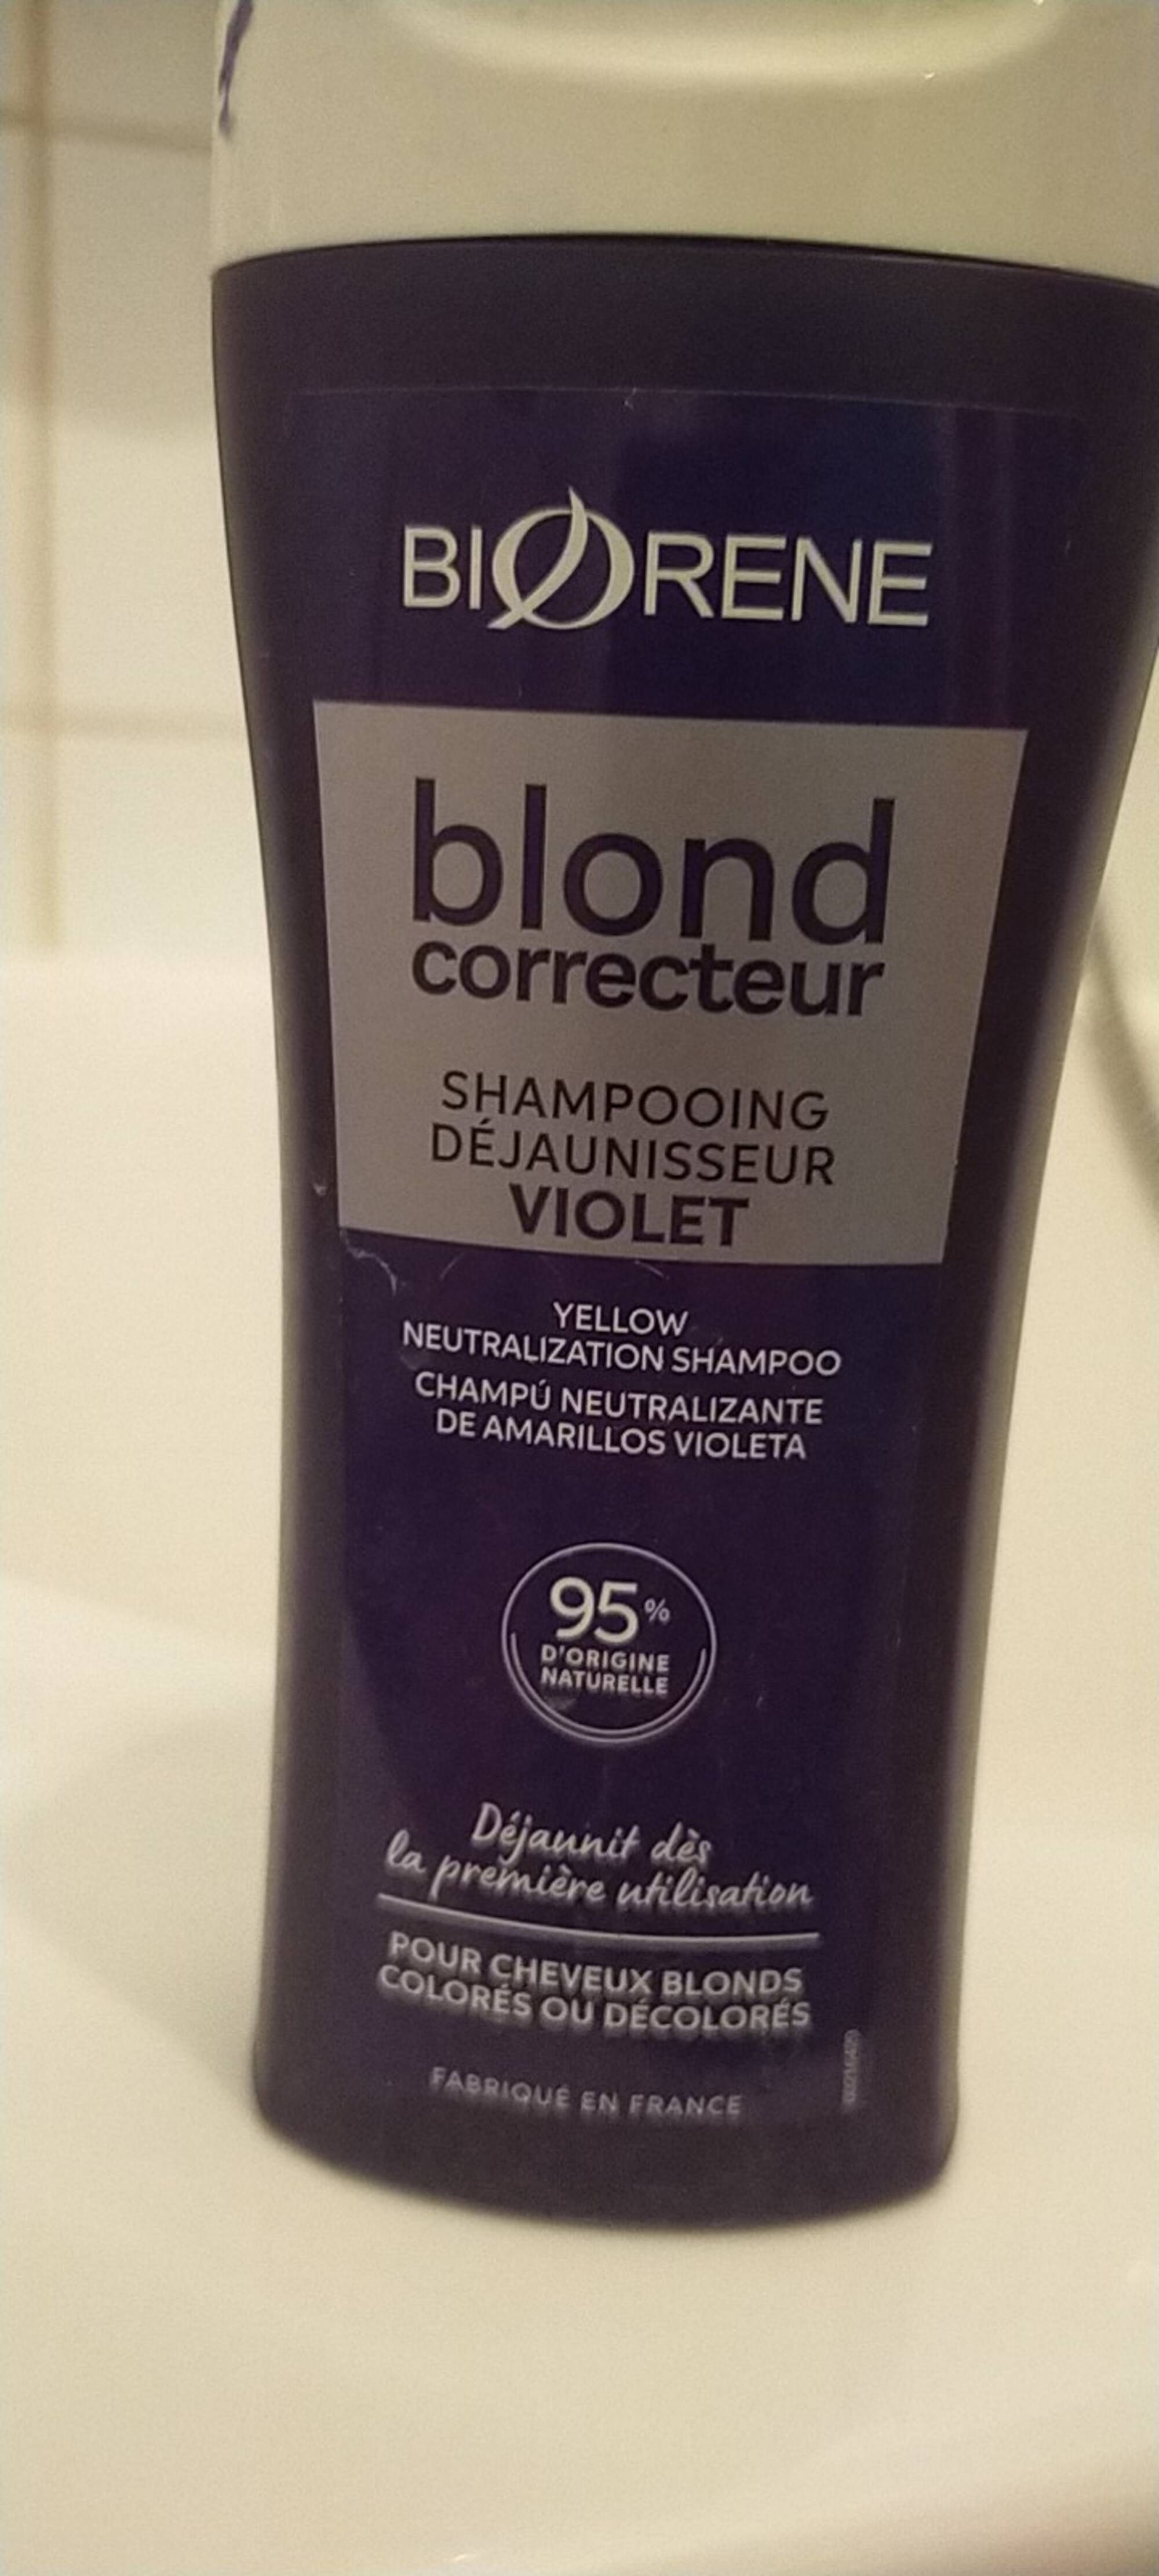 BIORÈNE - Blond correcteur  - Shampooing déjaunisseur violet